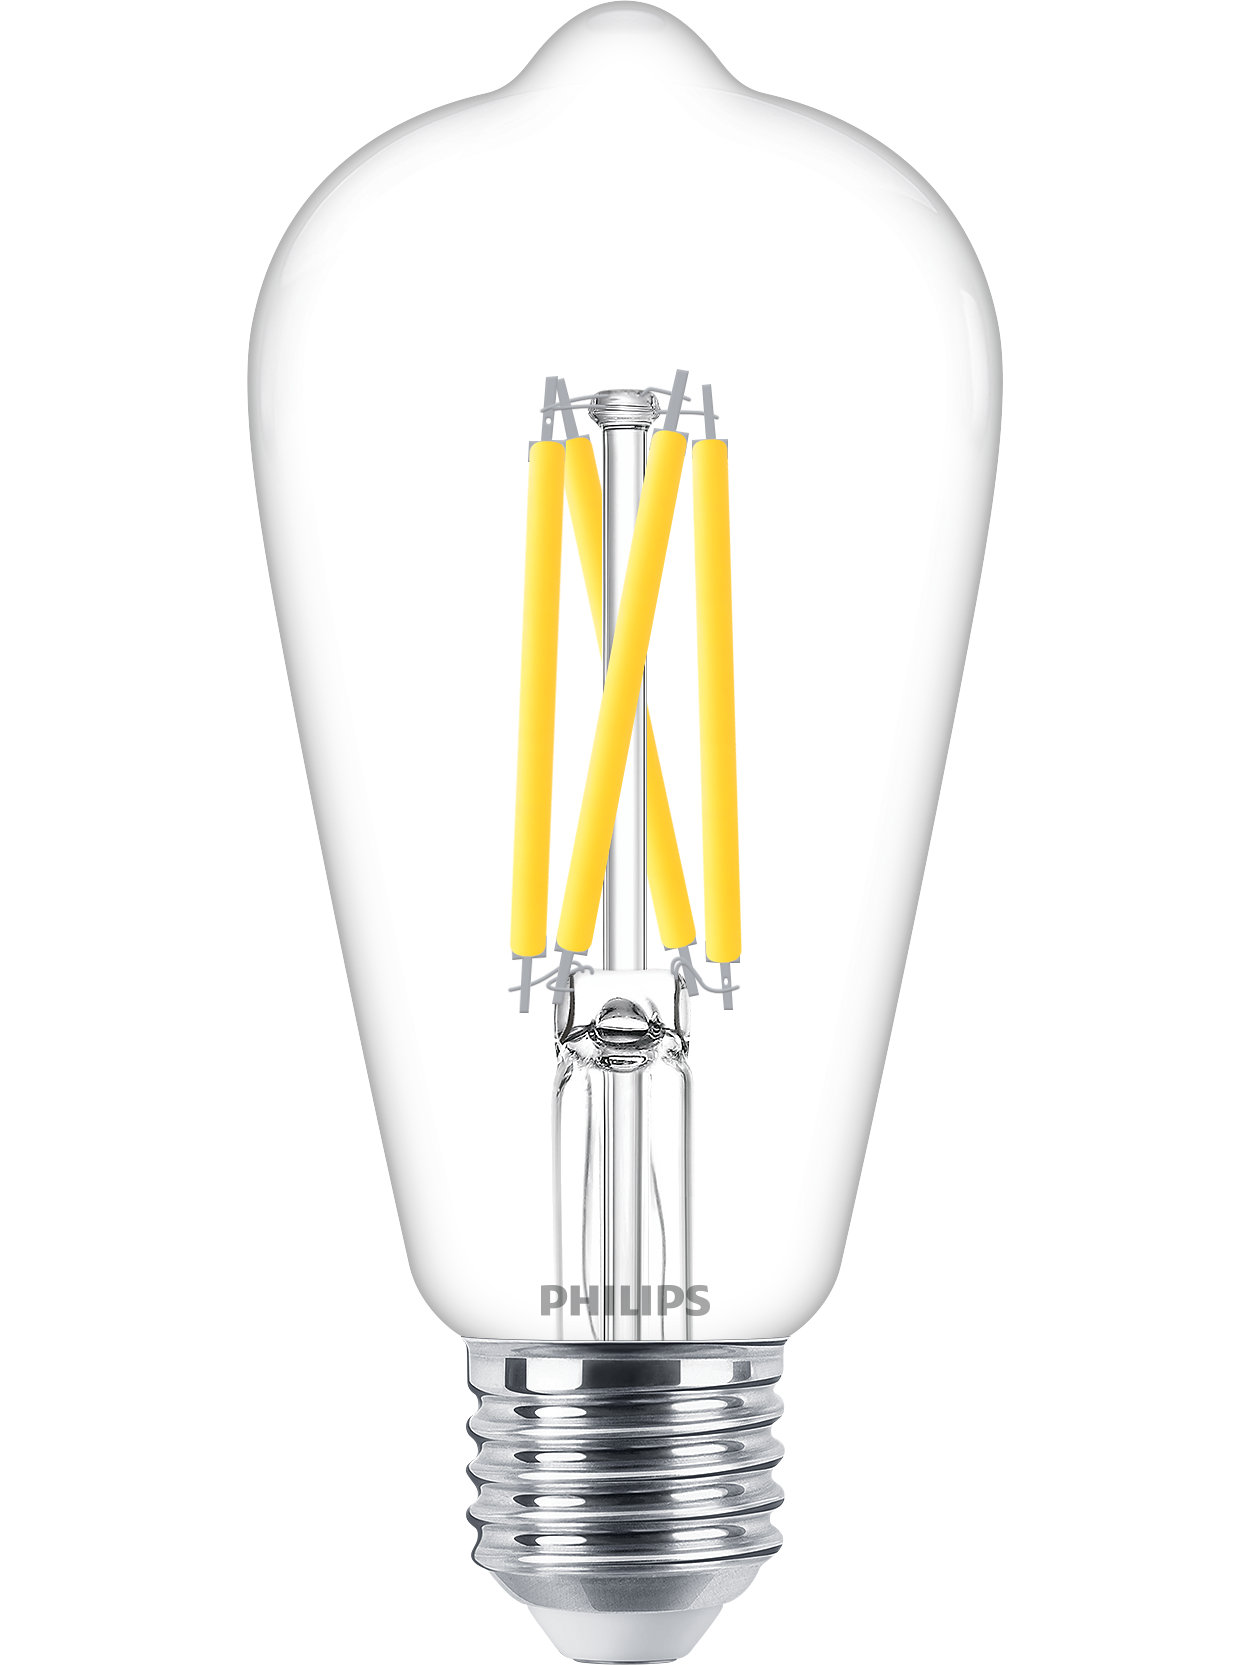 Dimbara LED-ljuskällor i glas med lägre energiförbrukning